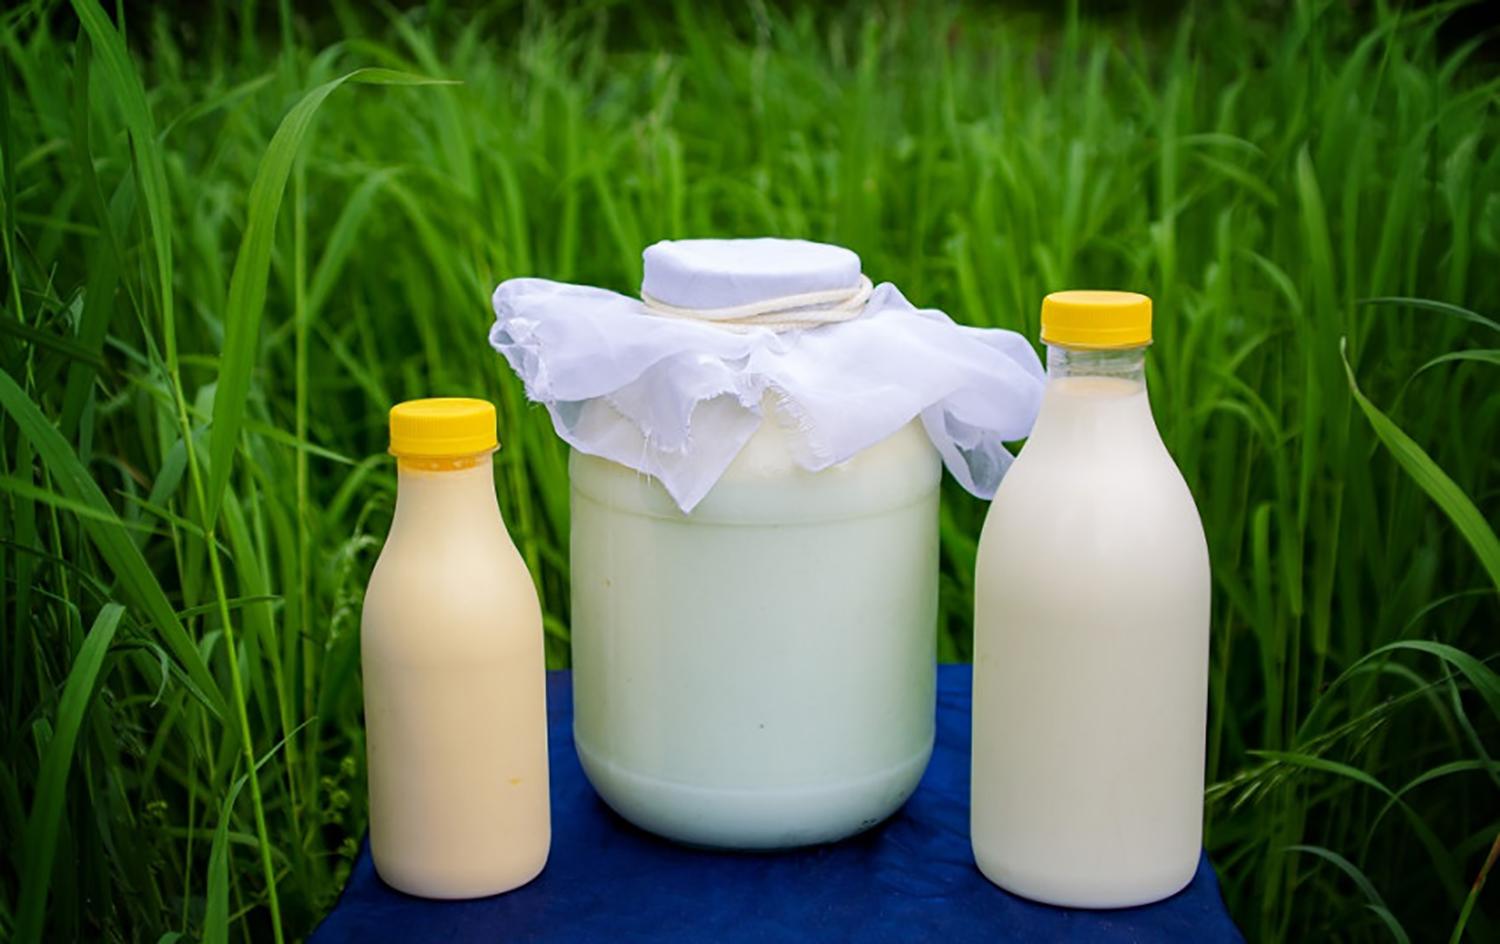 Reikalavimus nacionalinei paramai gauti atitinka beveik 90 proc. pieno gamintojų / Pieno ūkiai sulauks paramos.